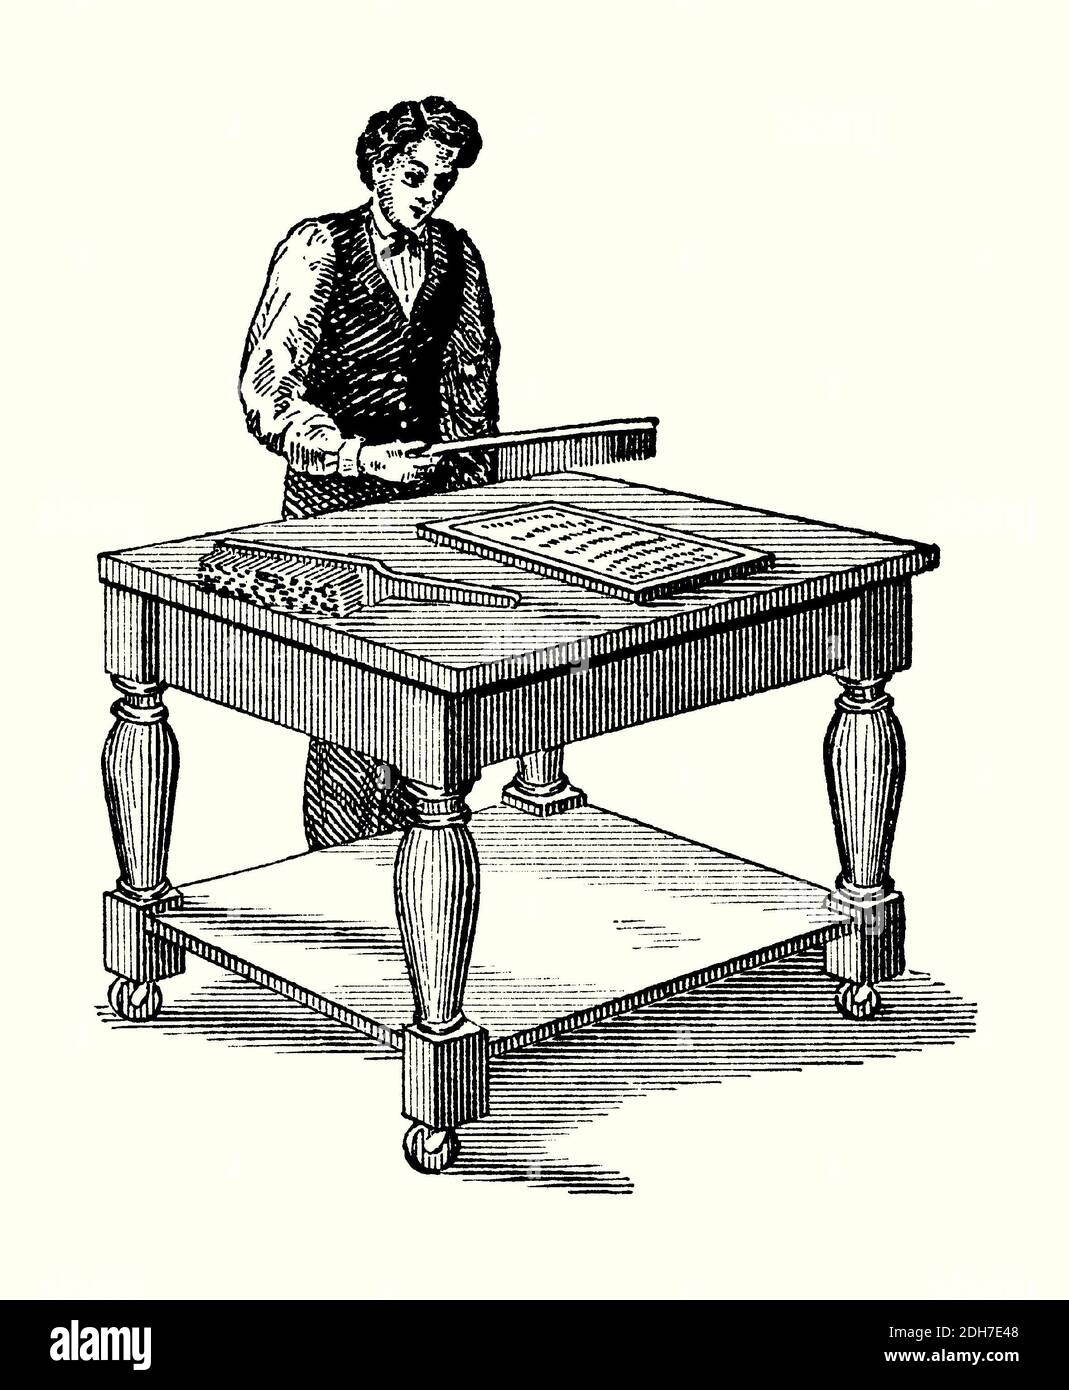 Une ancienne gravure d'un ouvrier à une table battue faisant des moules de  stéréotype (flongs) dans les années 1800. Il est tiré d'un livre victorien  des années 1880. Ici, un employé tapote (